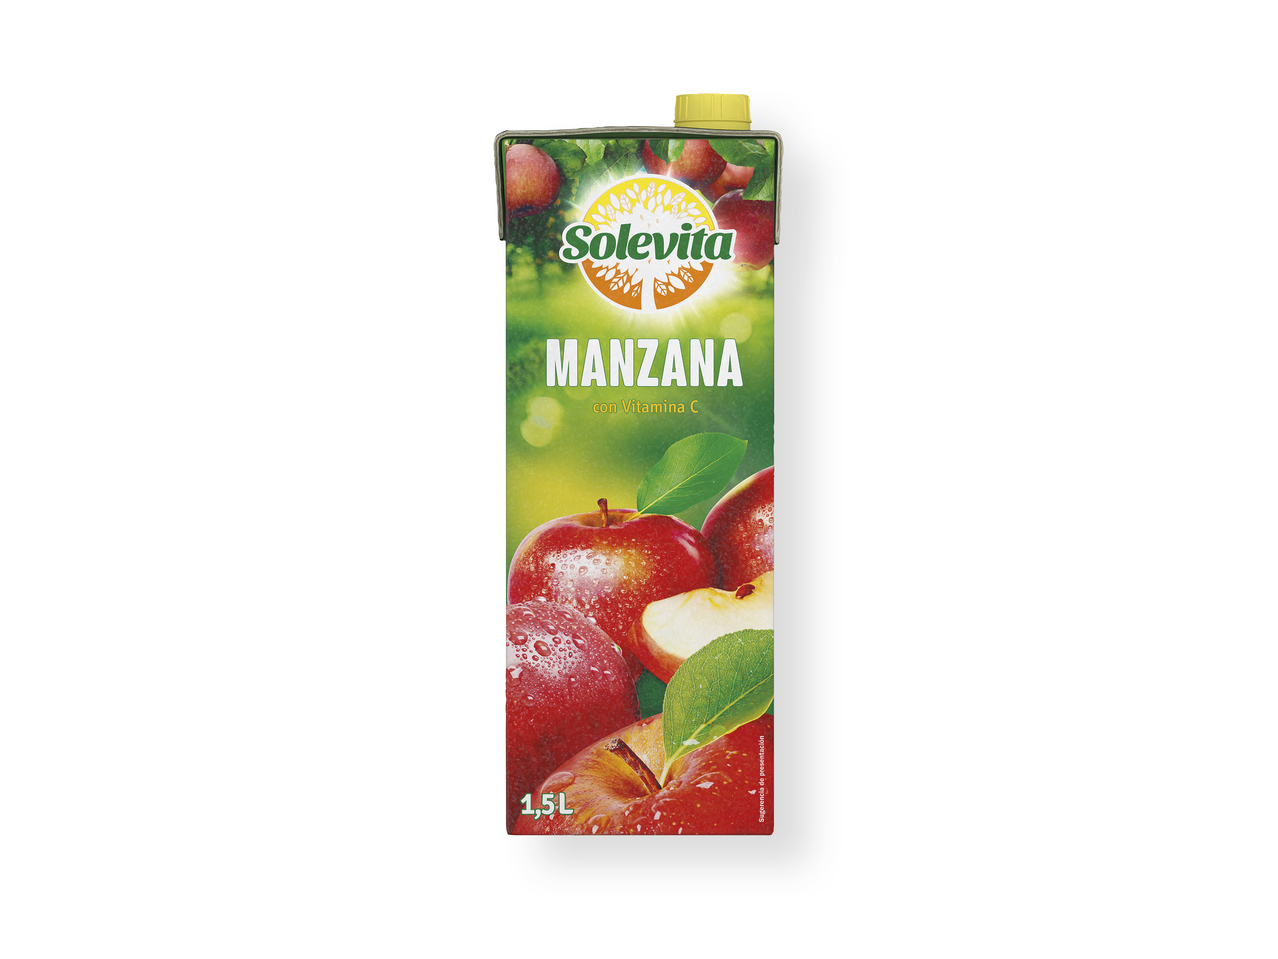 'Solevita(R)' Zumo de manzana